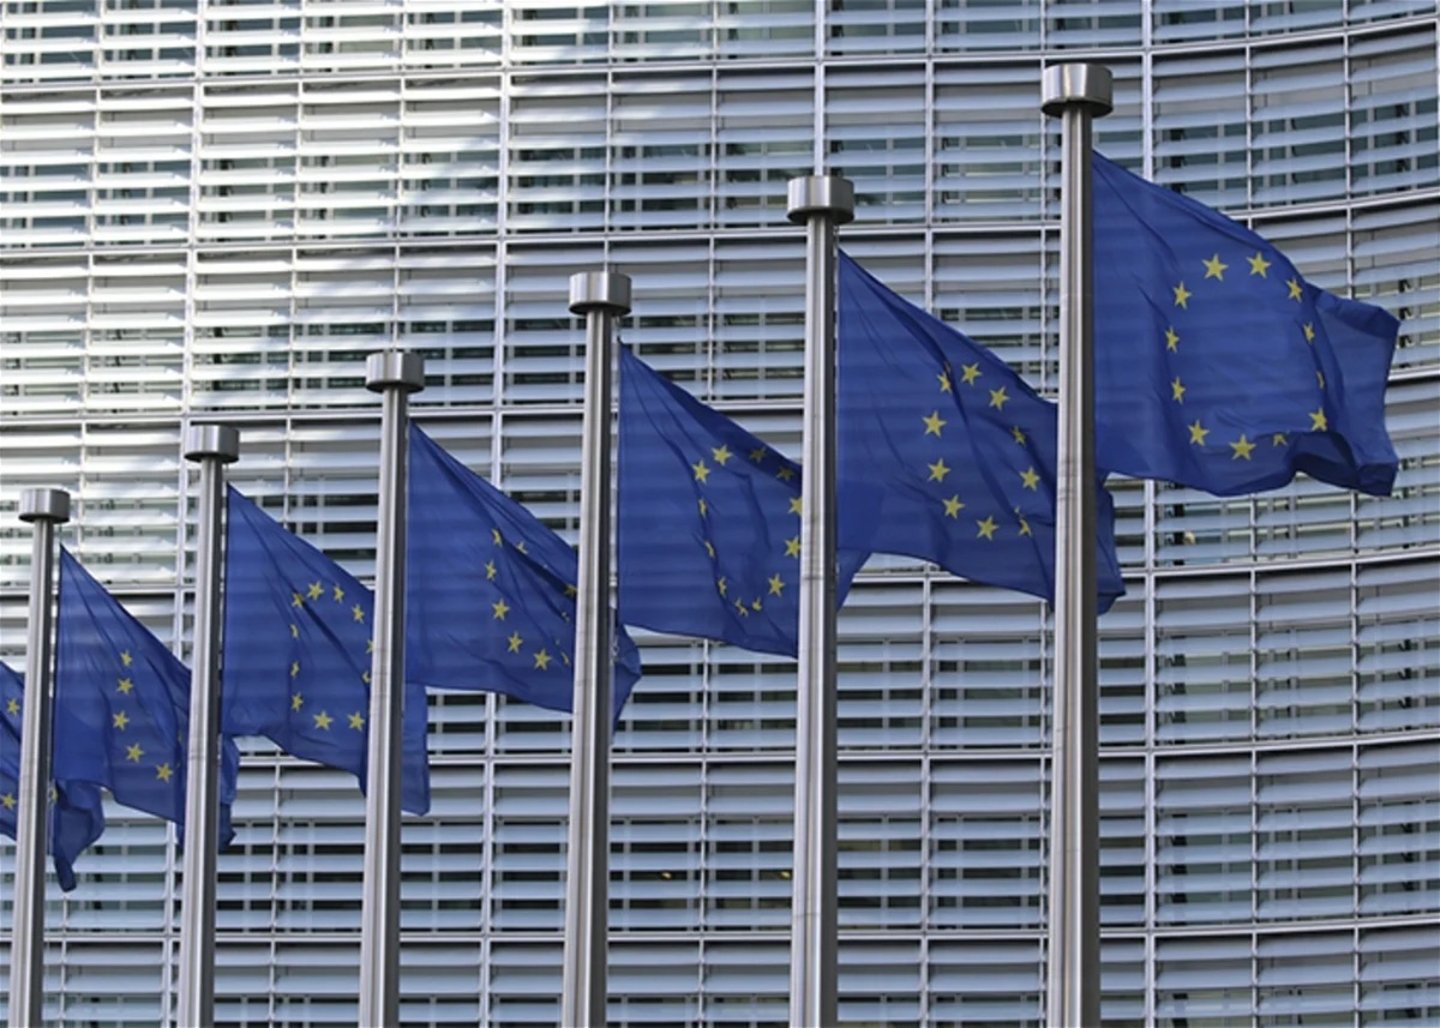 Banderas de la UE